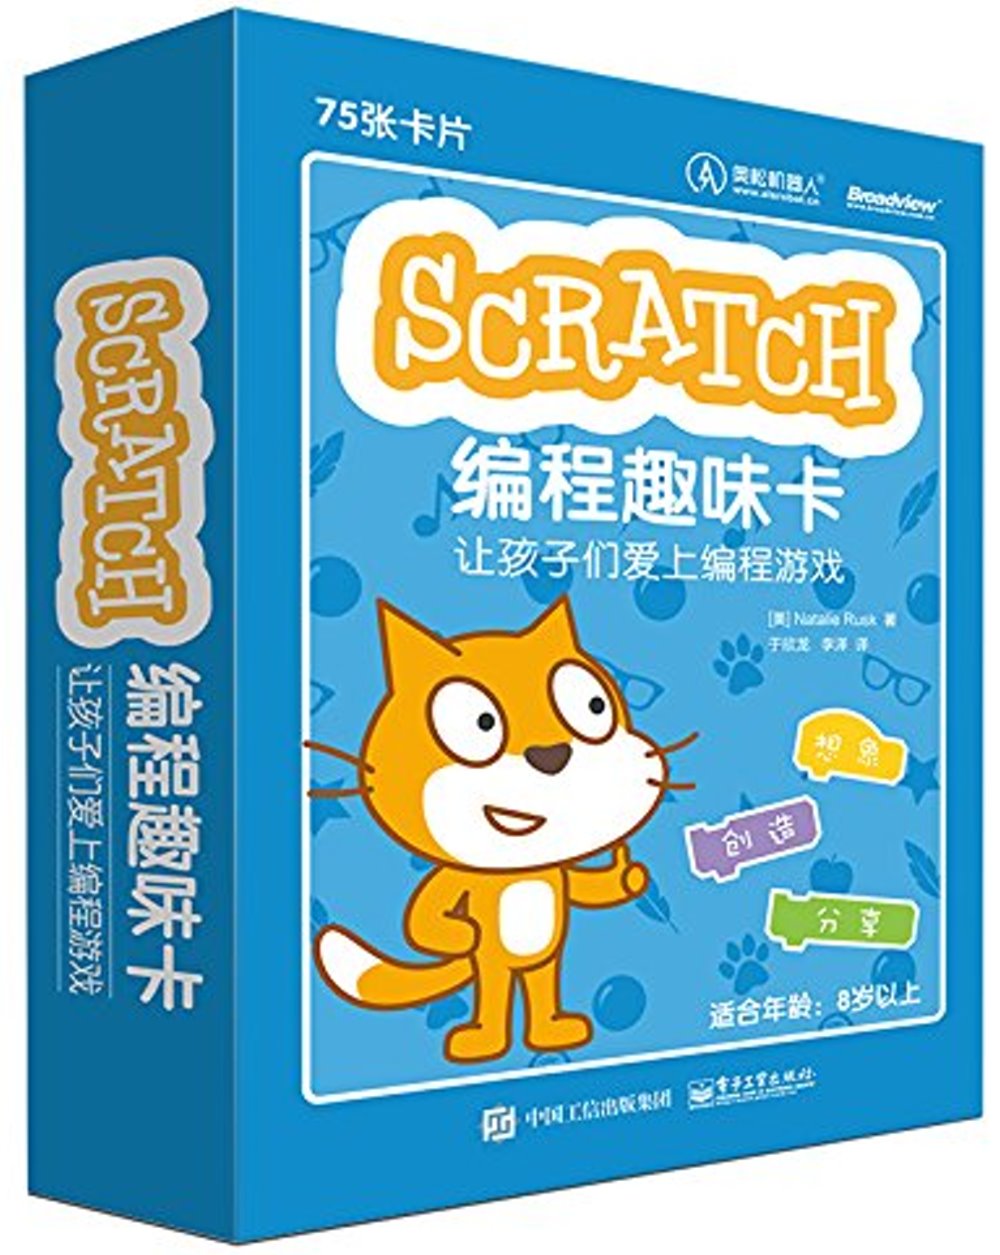 Scratch編程趣味卡：讓孩子們愛上編程游戲